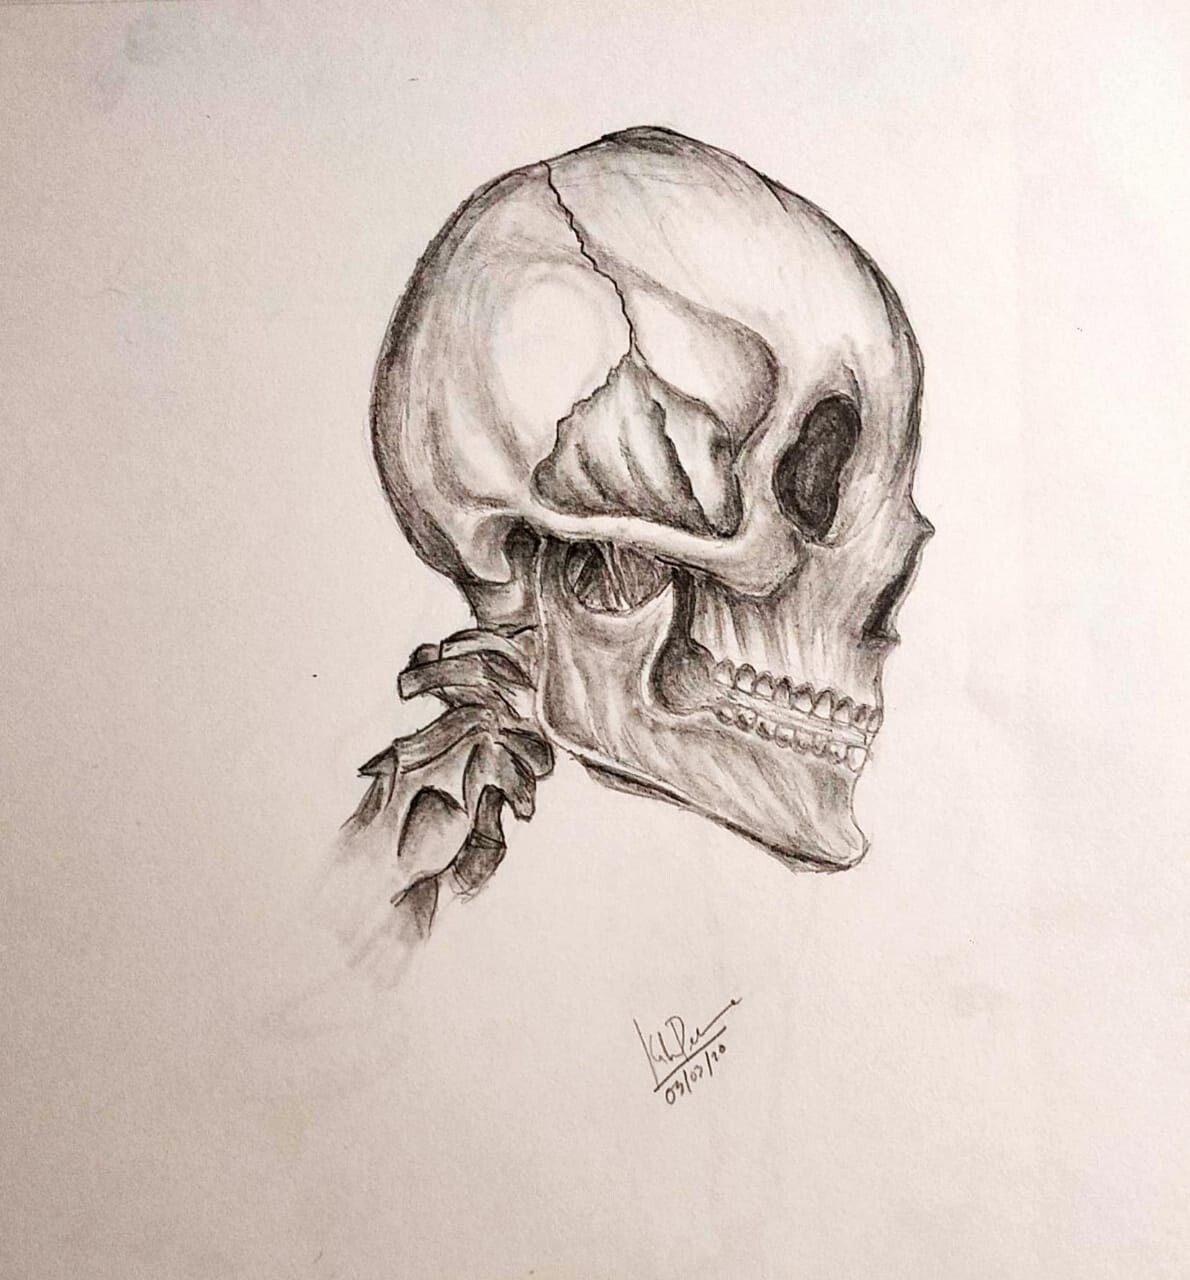 ArtStation - Pencil Sketch - Skull